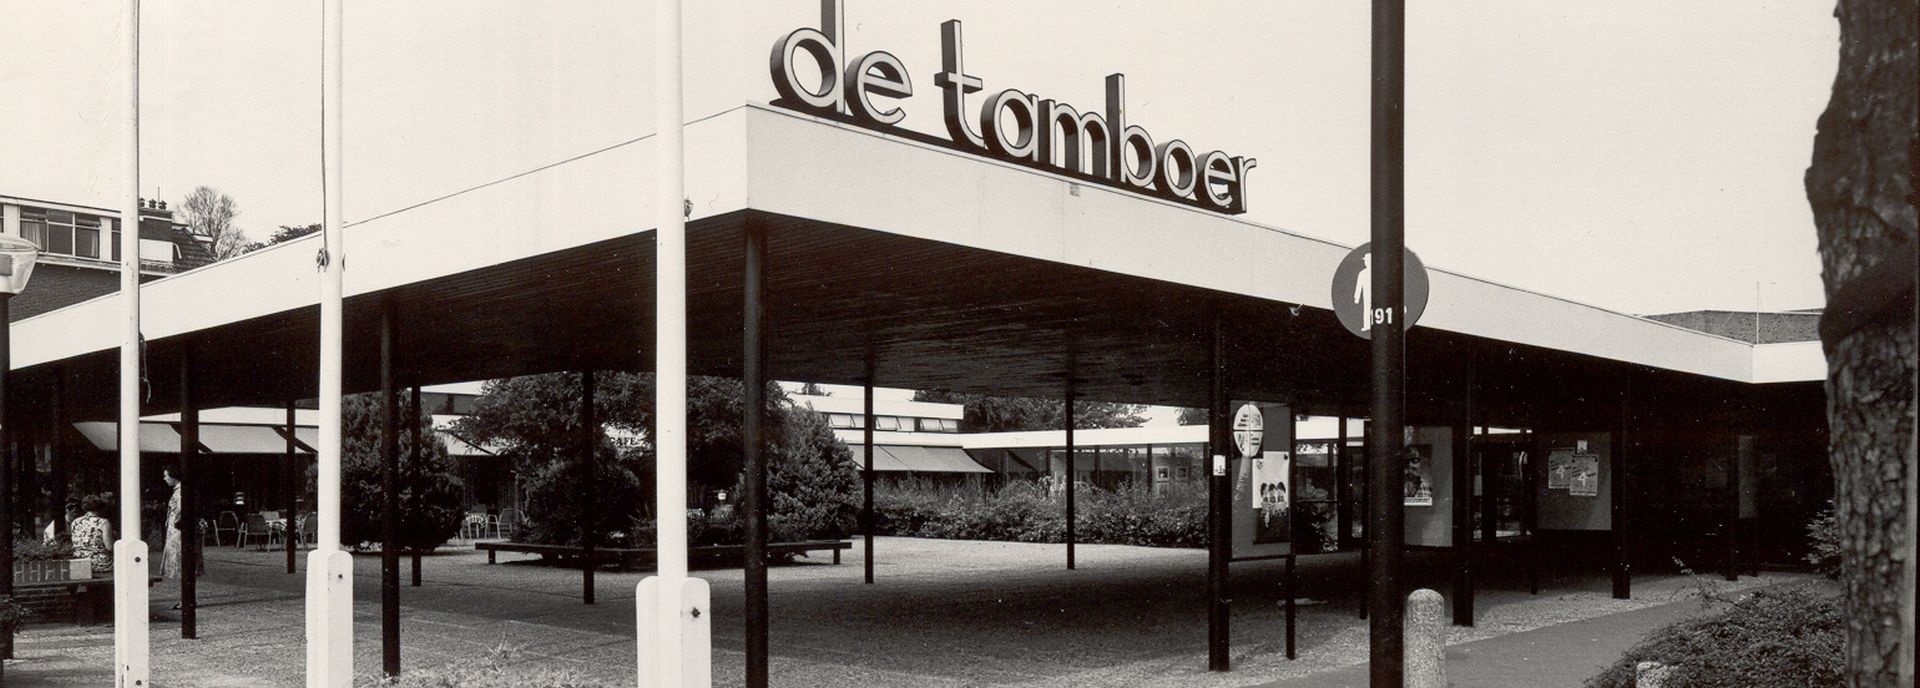 De geschiedenis van De Tamboer begint in 1967. Het is een historie vol hoogtepunten. In 2017 vierde het theater haar vijftigjarig bestaan.